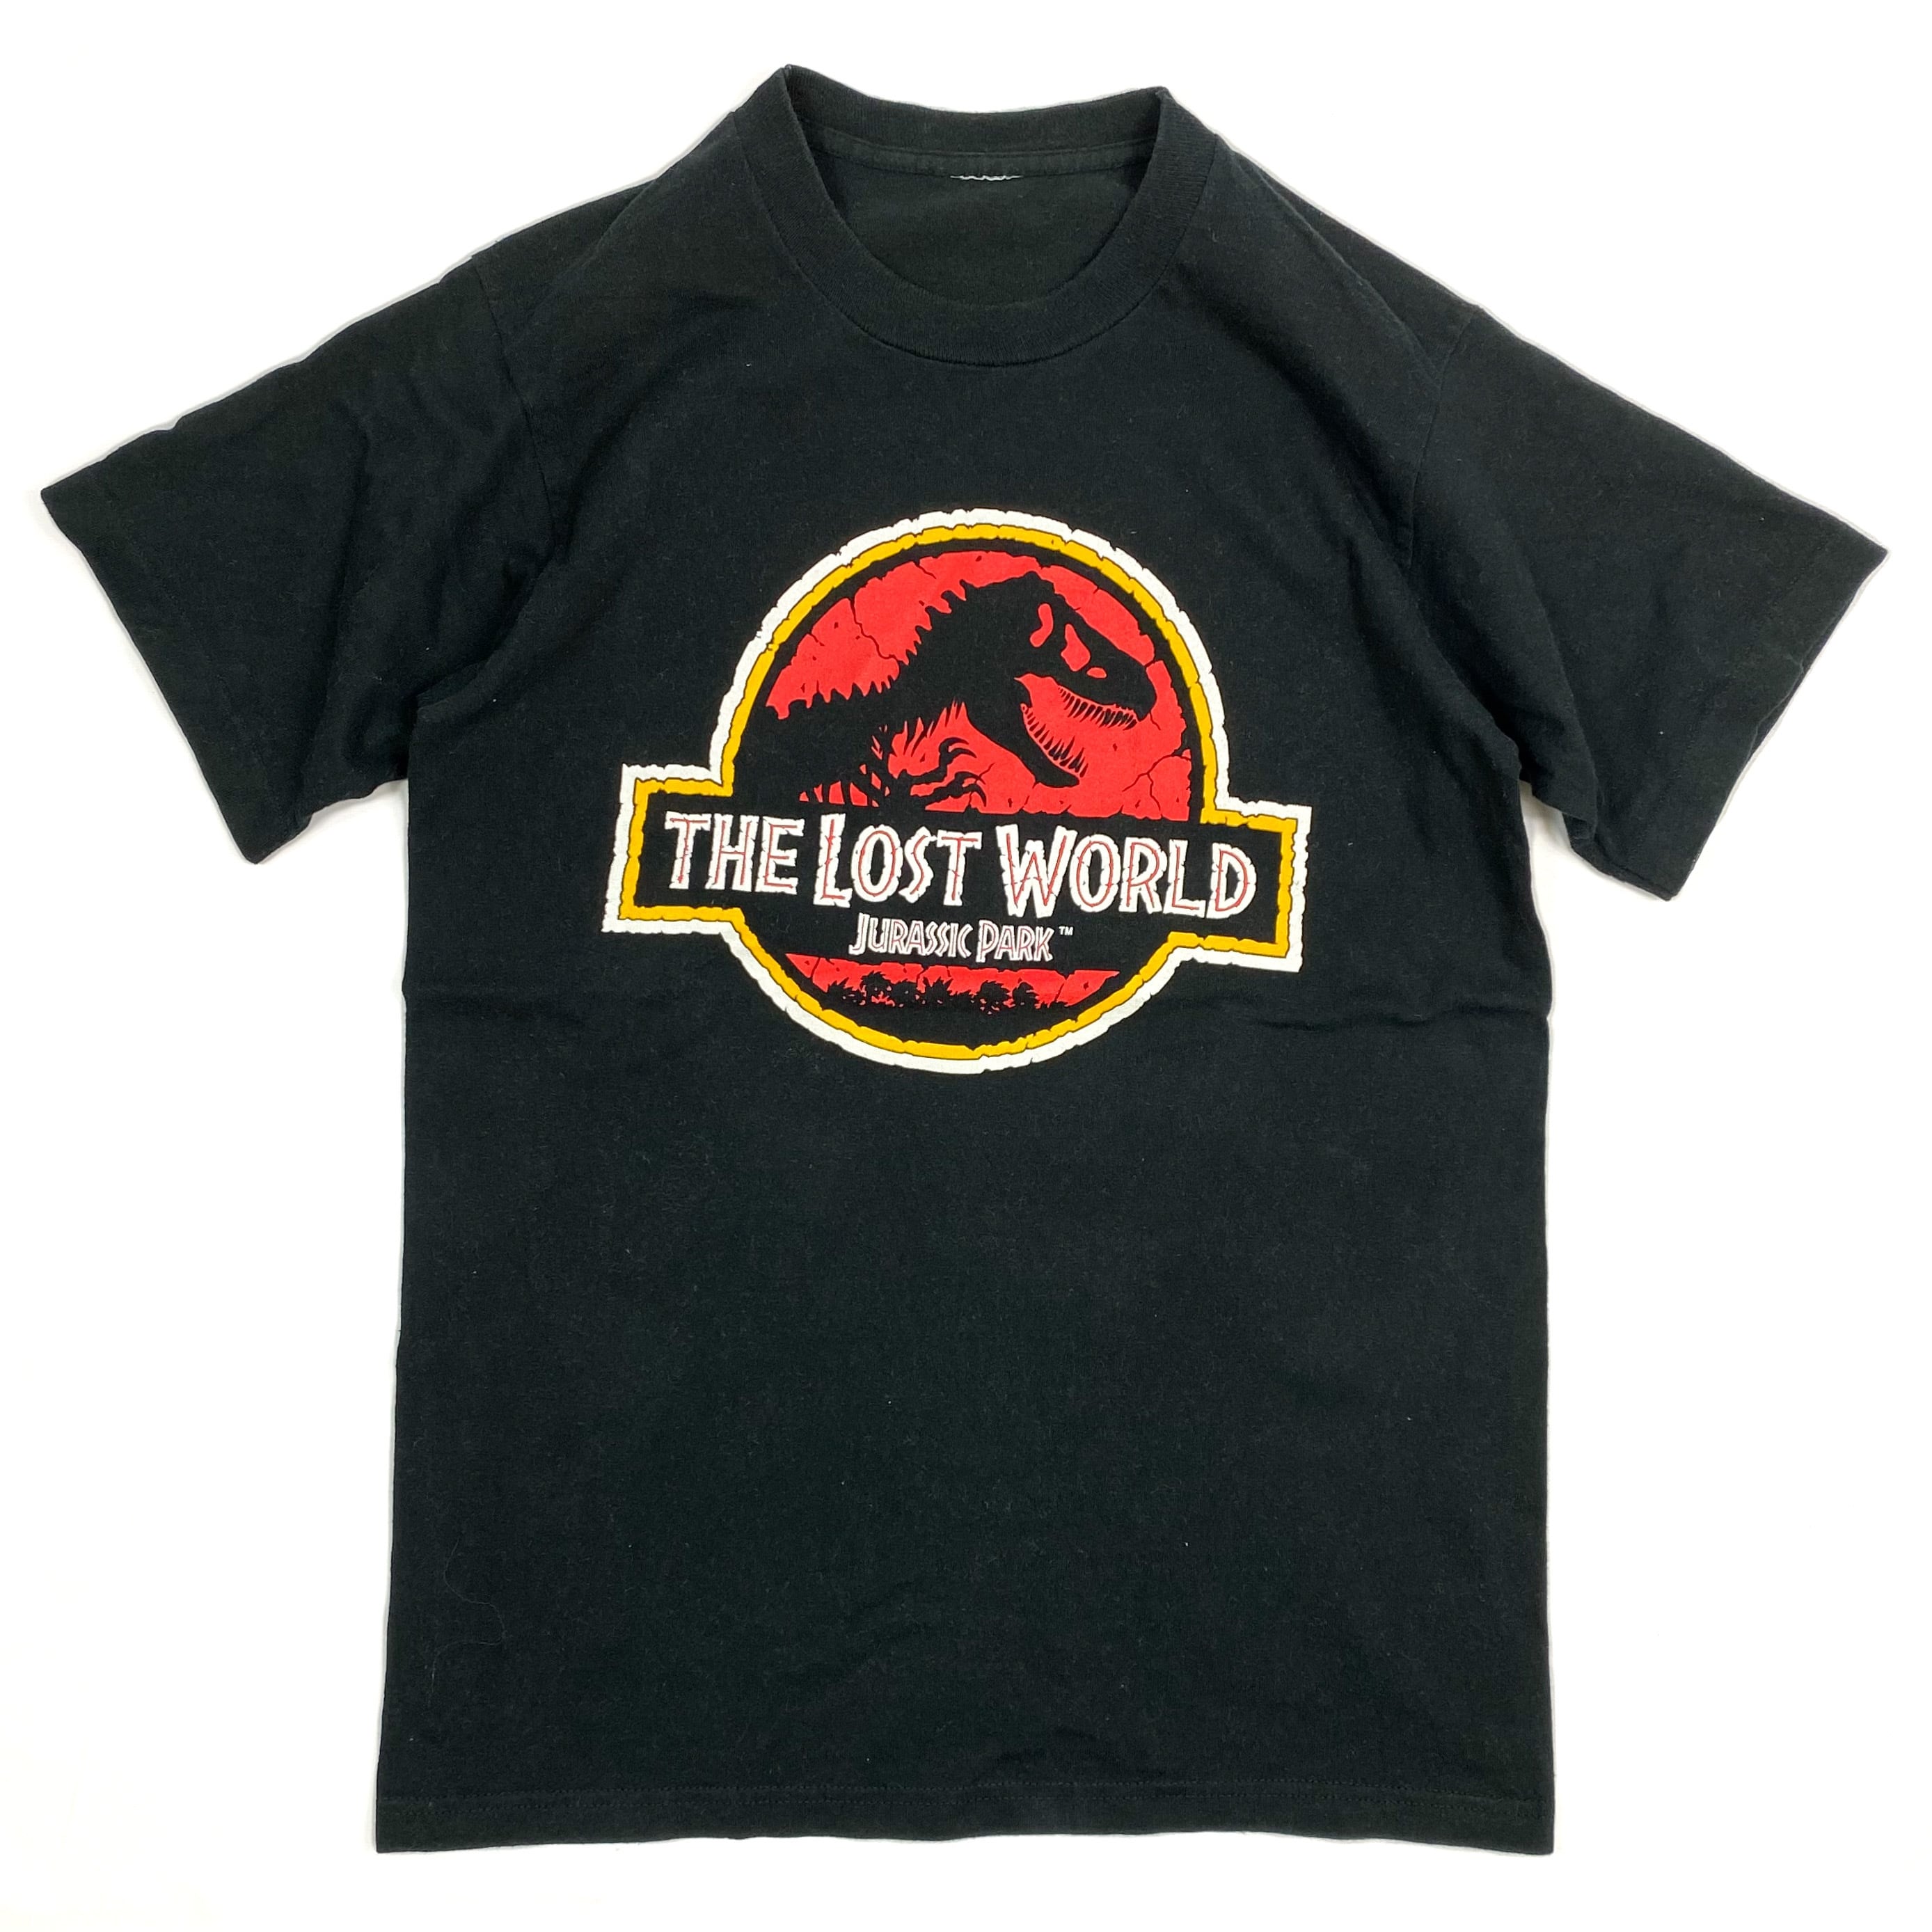 90s JurassicPark movie T-shirt ジュラシックパーク